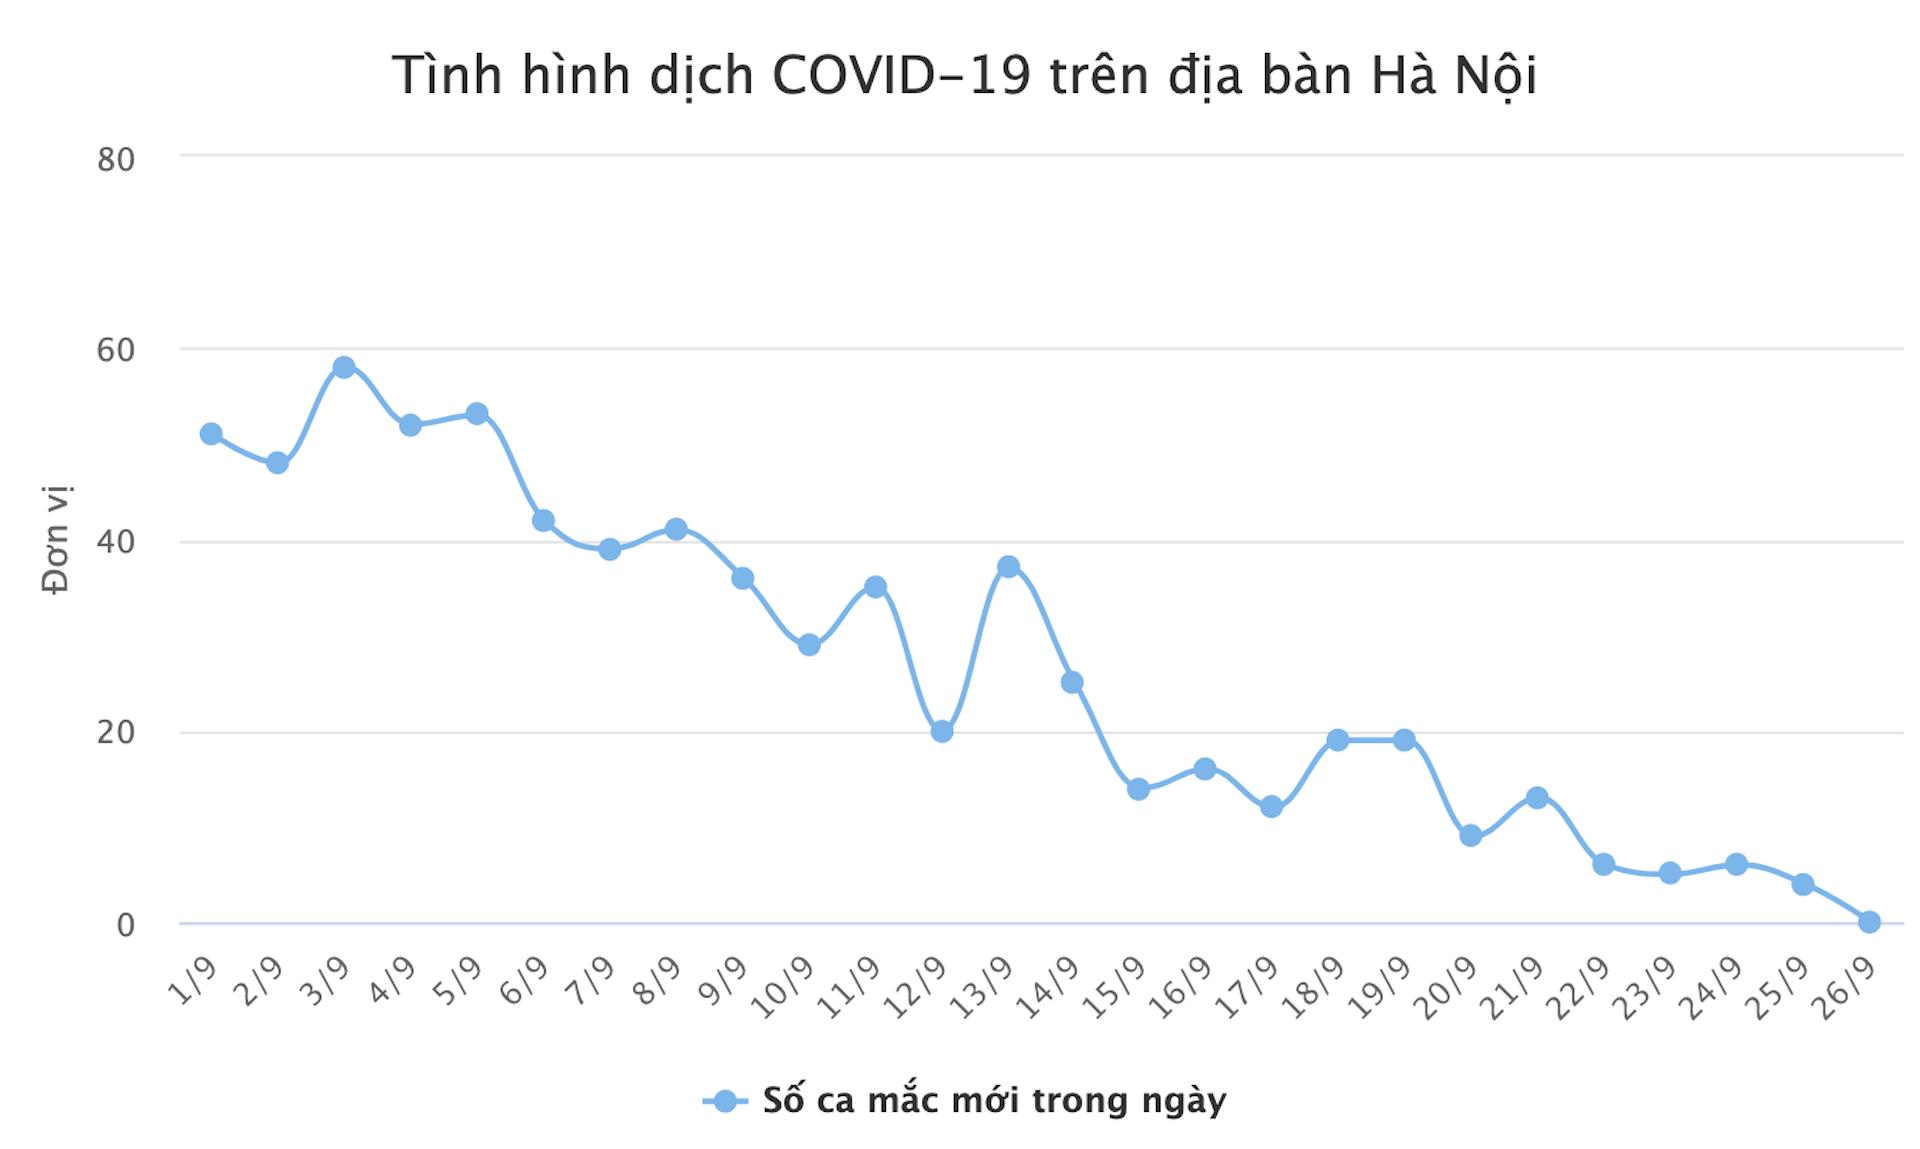 Ngày đầu tiên sau gần 3 tháng, Hà Nội không ghi nhận ca mắc mới COVID-19 - 1